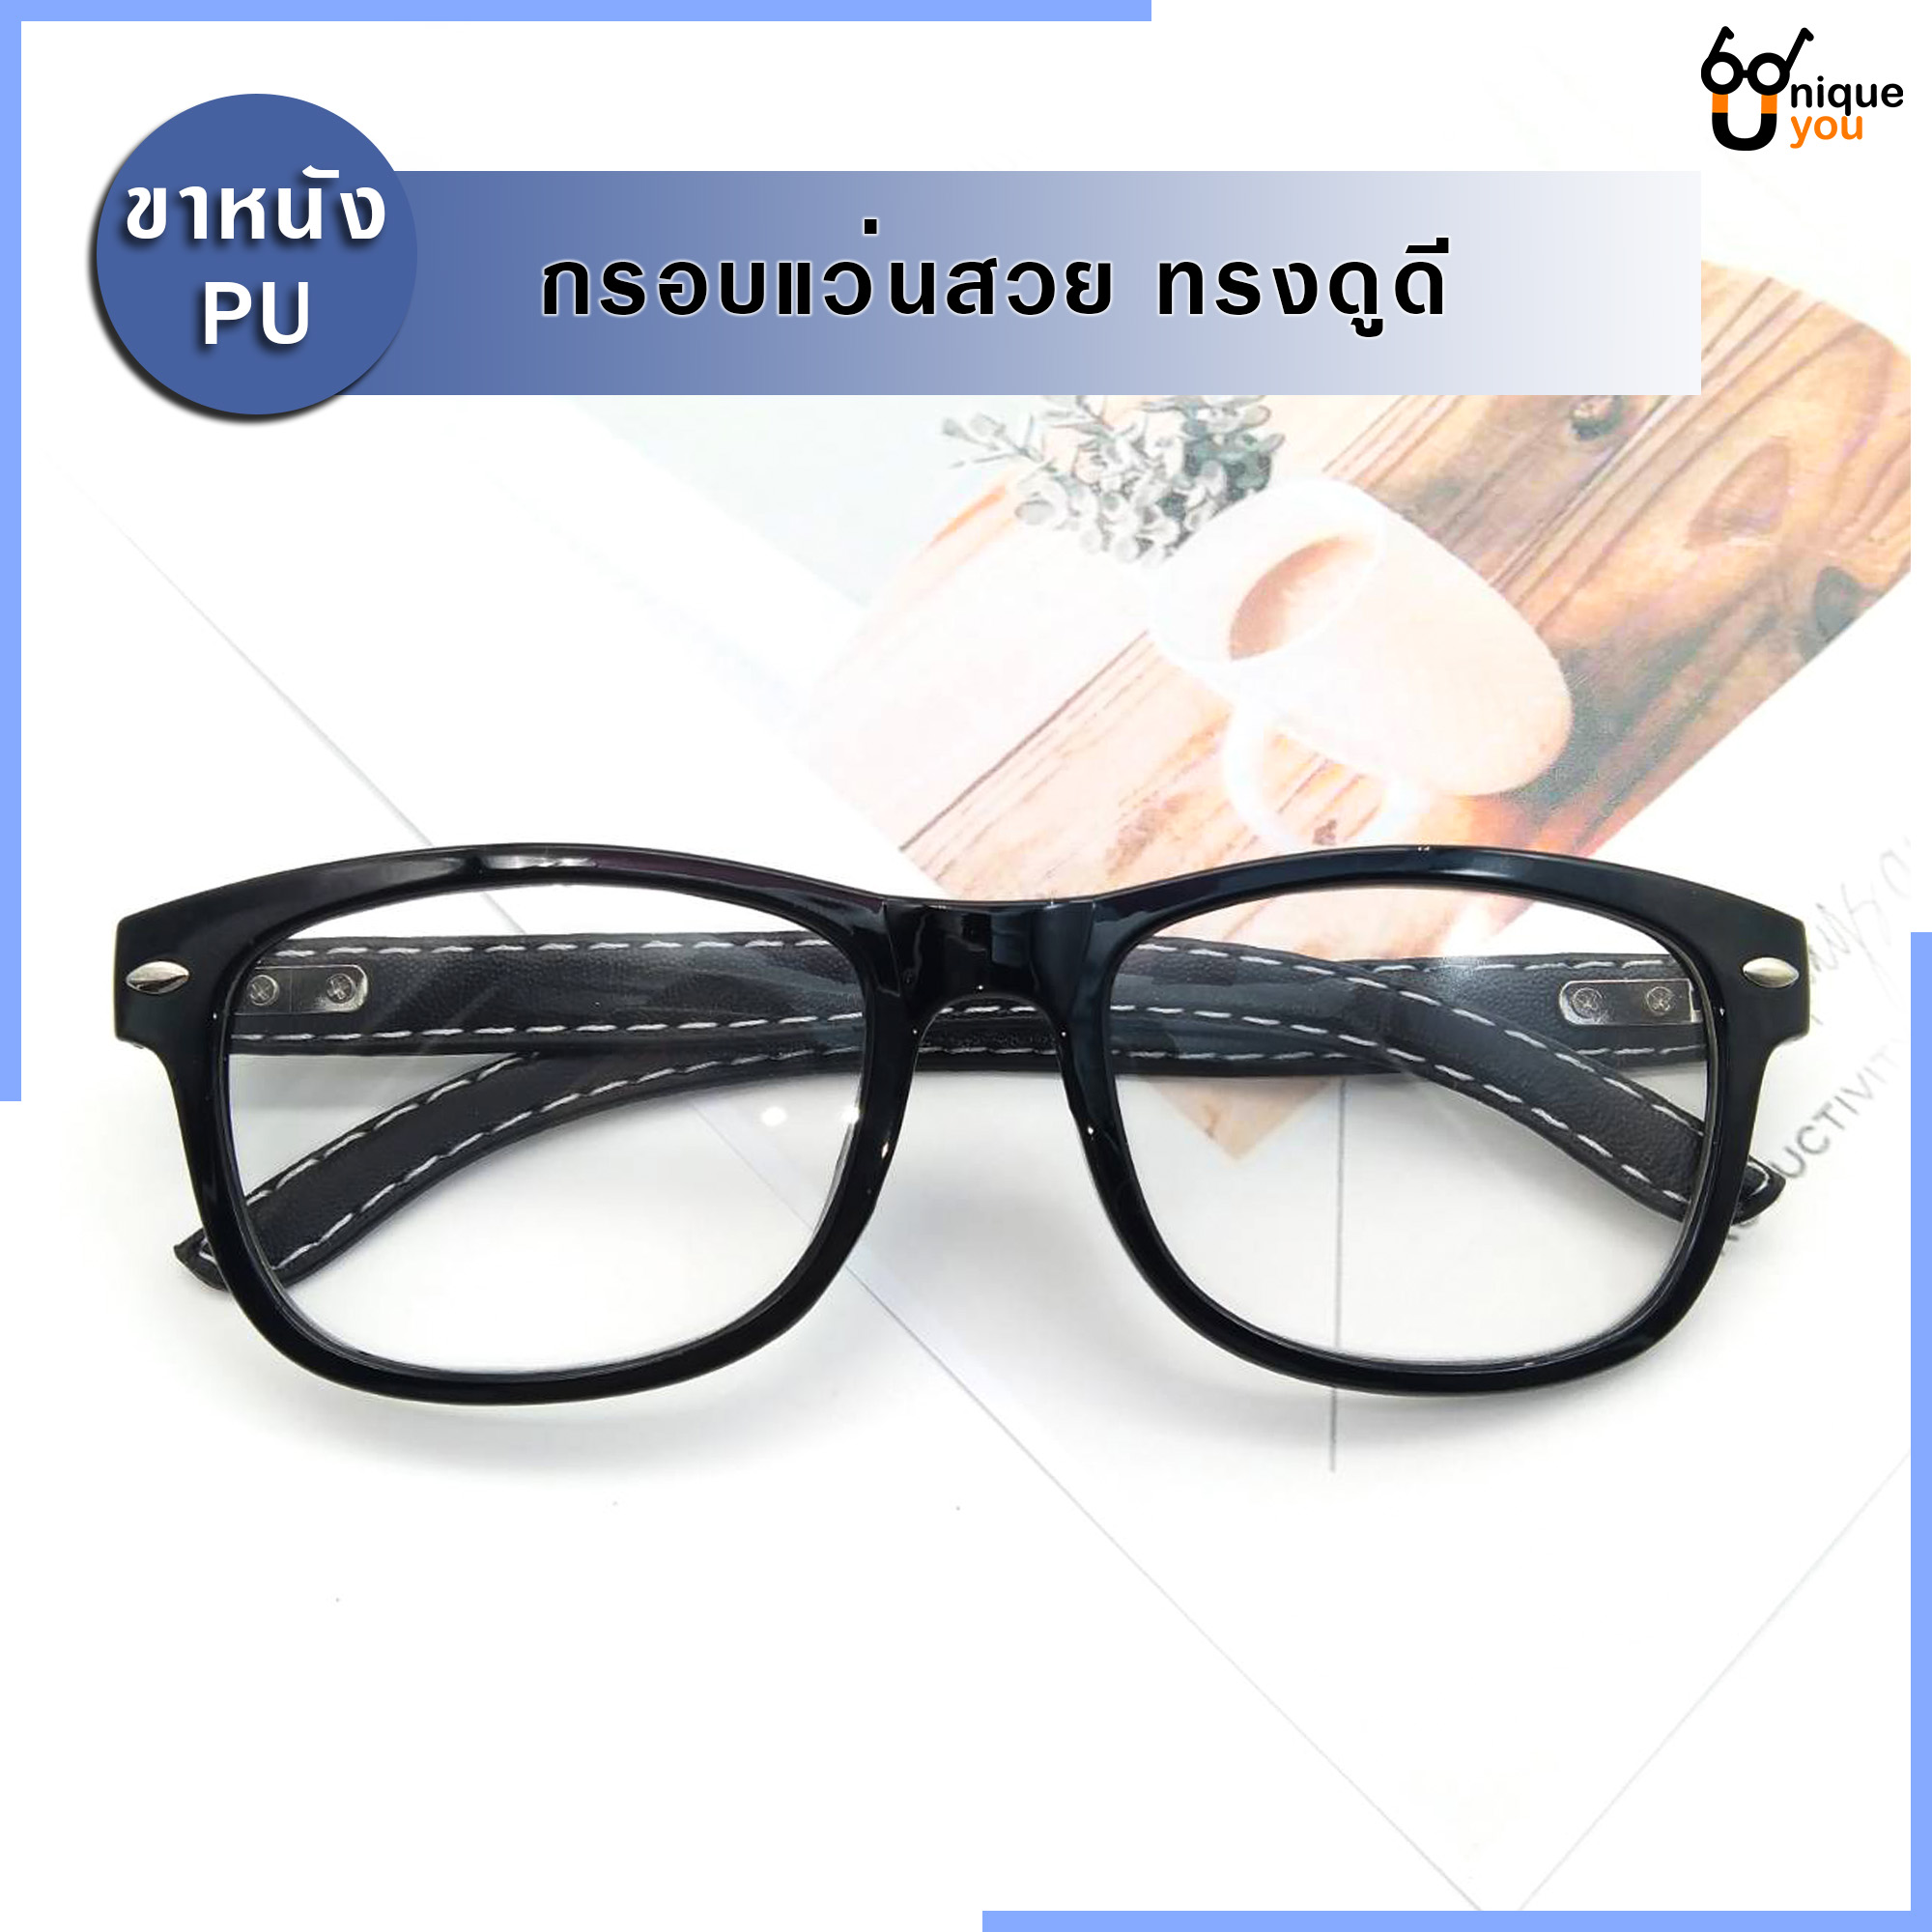 รูปภาพเพิ่มเติมเกี่ยวกับ Uniq แว่นสายตายาว แว่นสายตาสั้น ขาหนังPU กรอบแว่นหนังPU แว่นสายตา+กรอบแว่นตา แว่นสายตายาว-สั้น